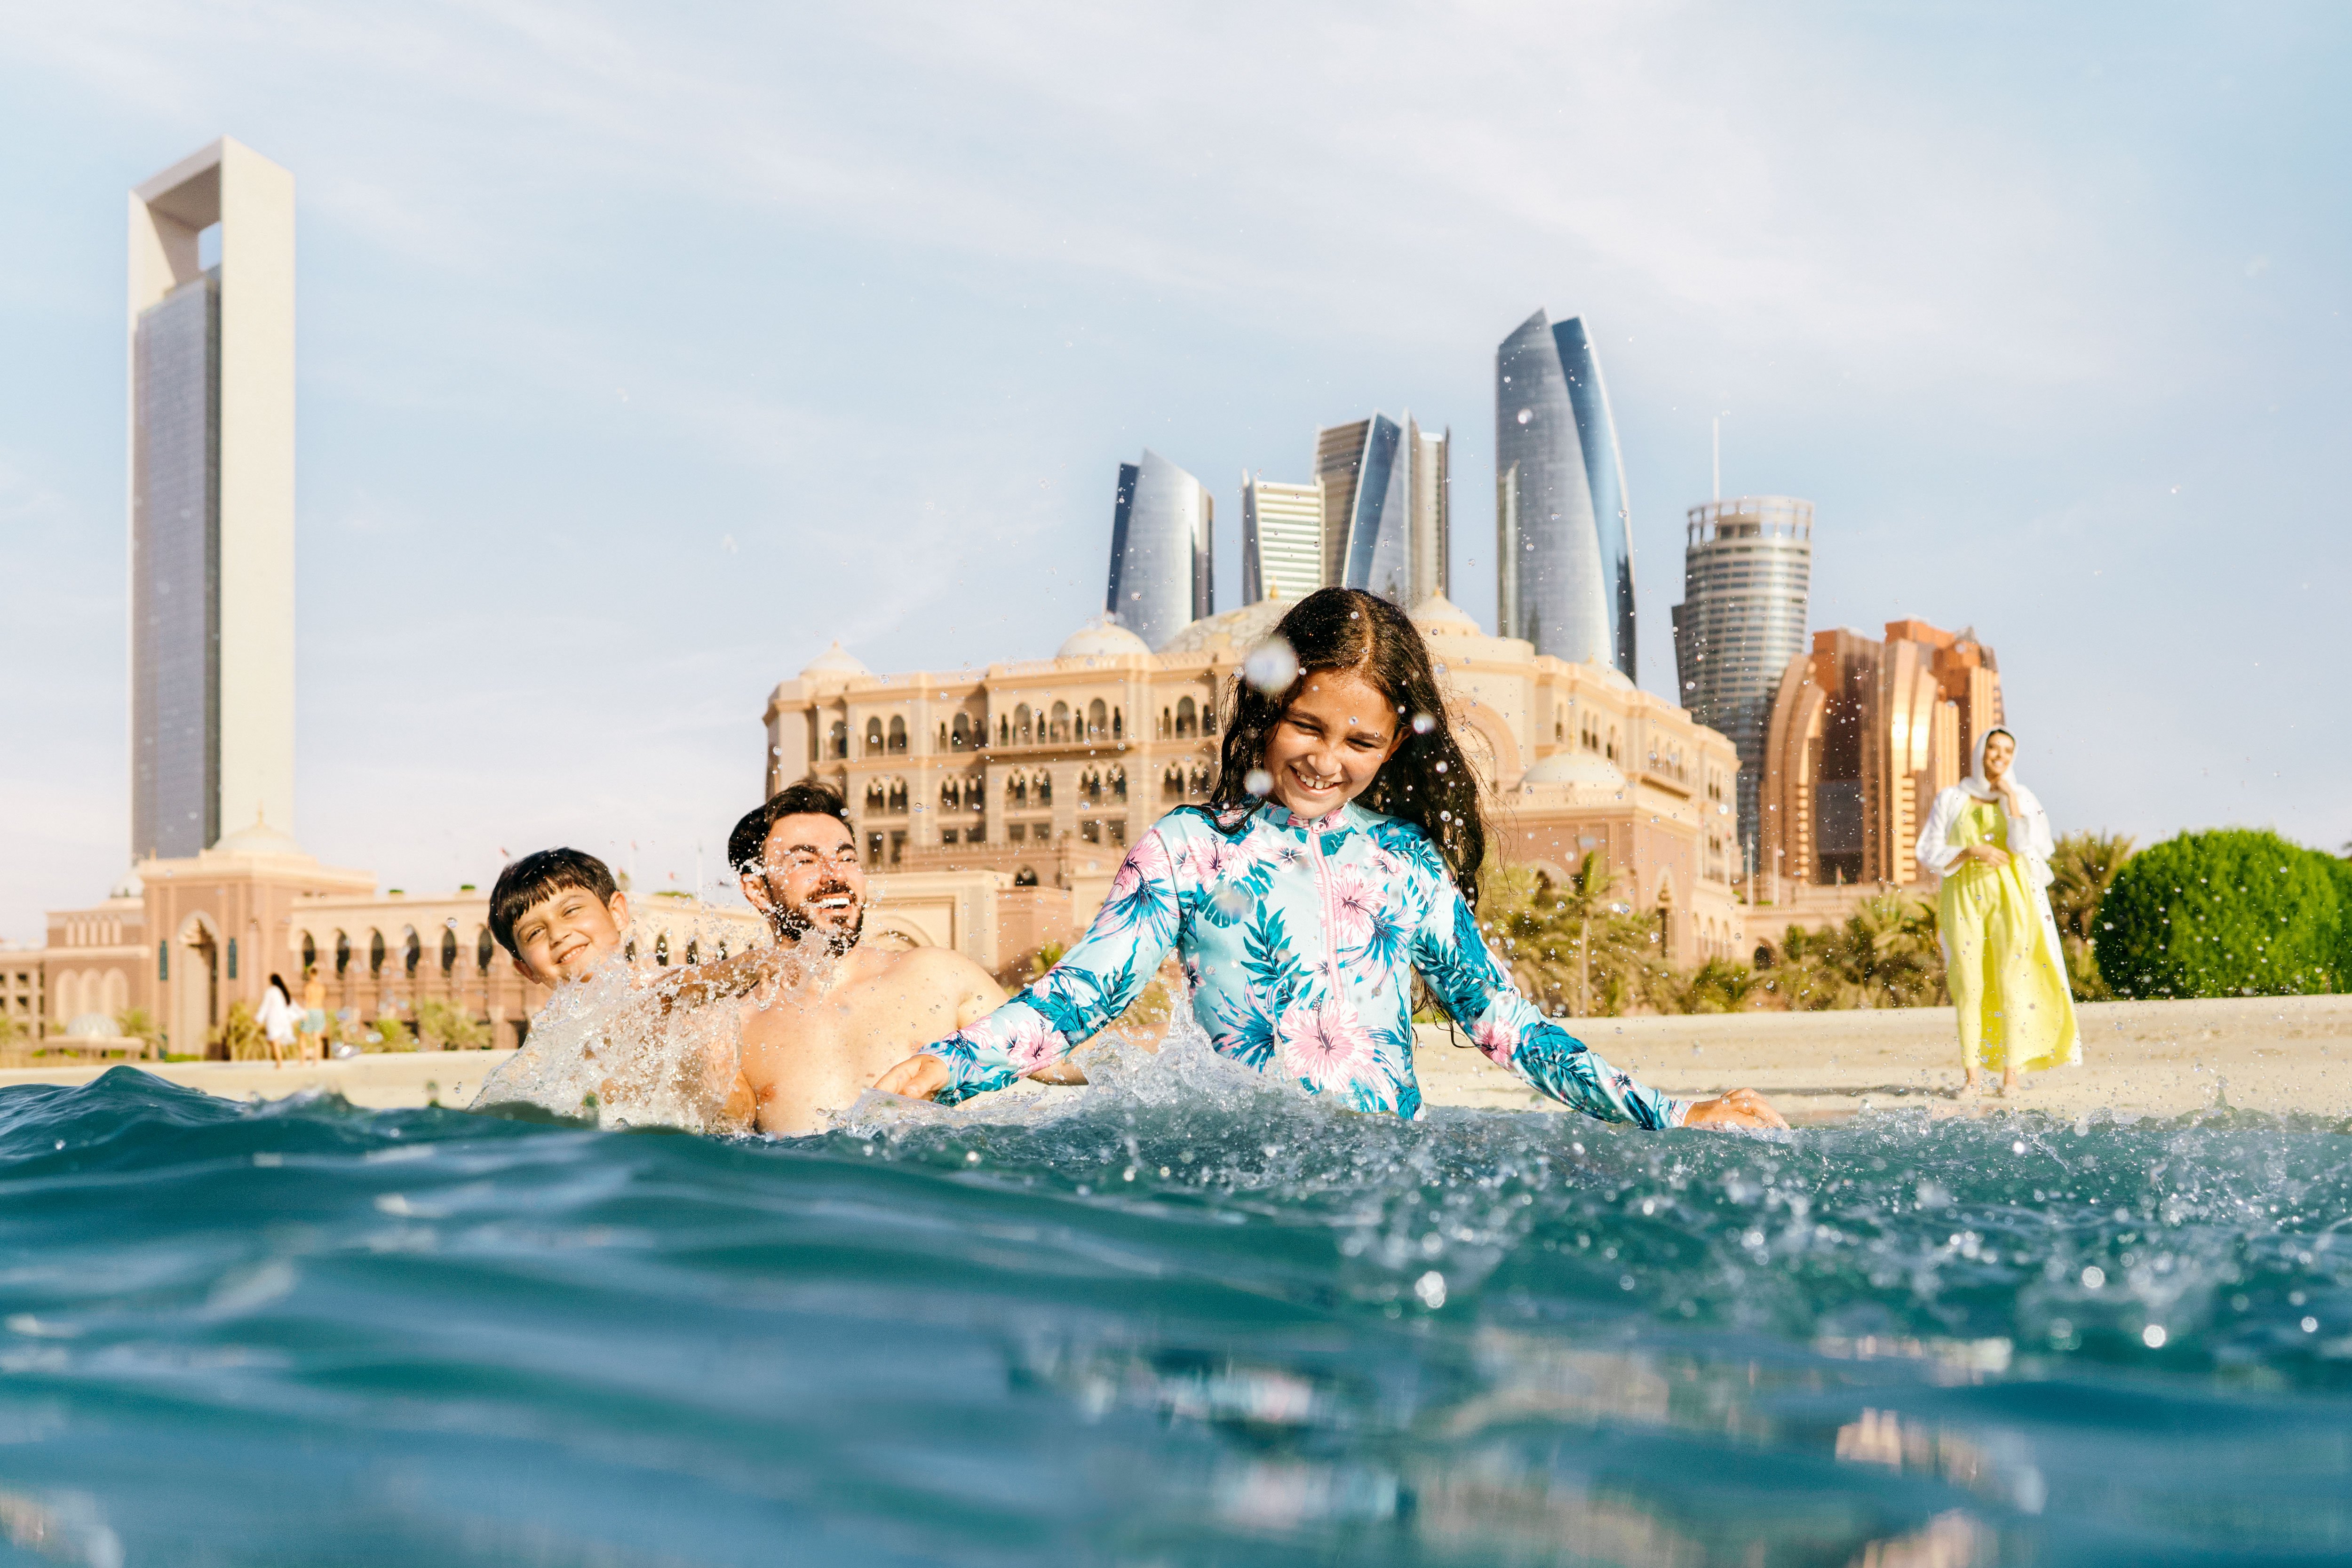 عائلة من أربع أفراد تتمتع باللعب في مياه إحدى شواطئ أبوظبي قرب قصر الإمارات